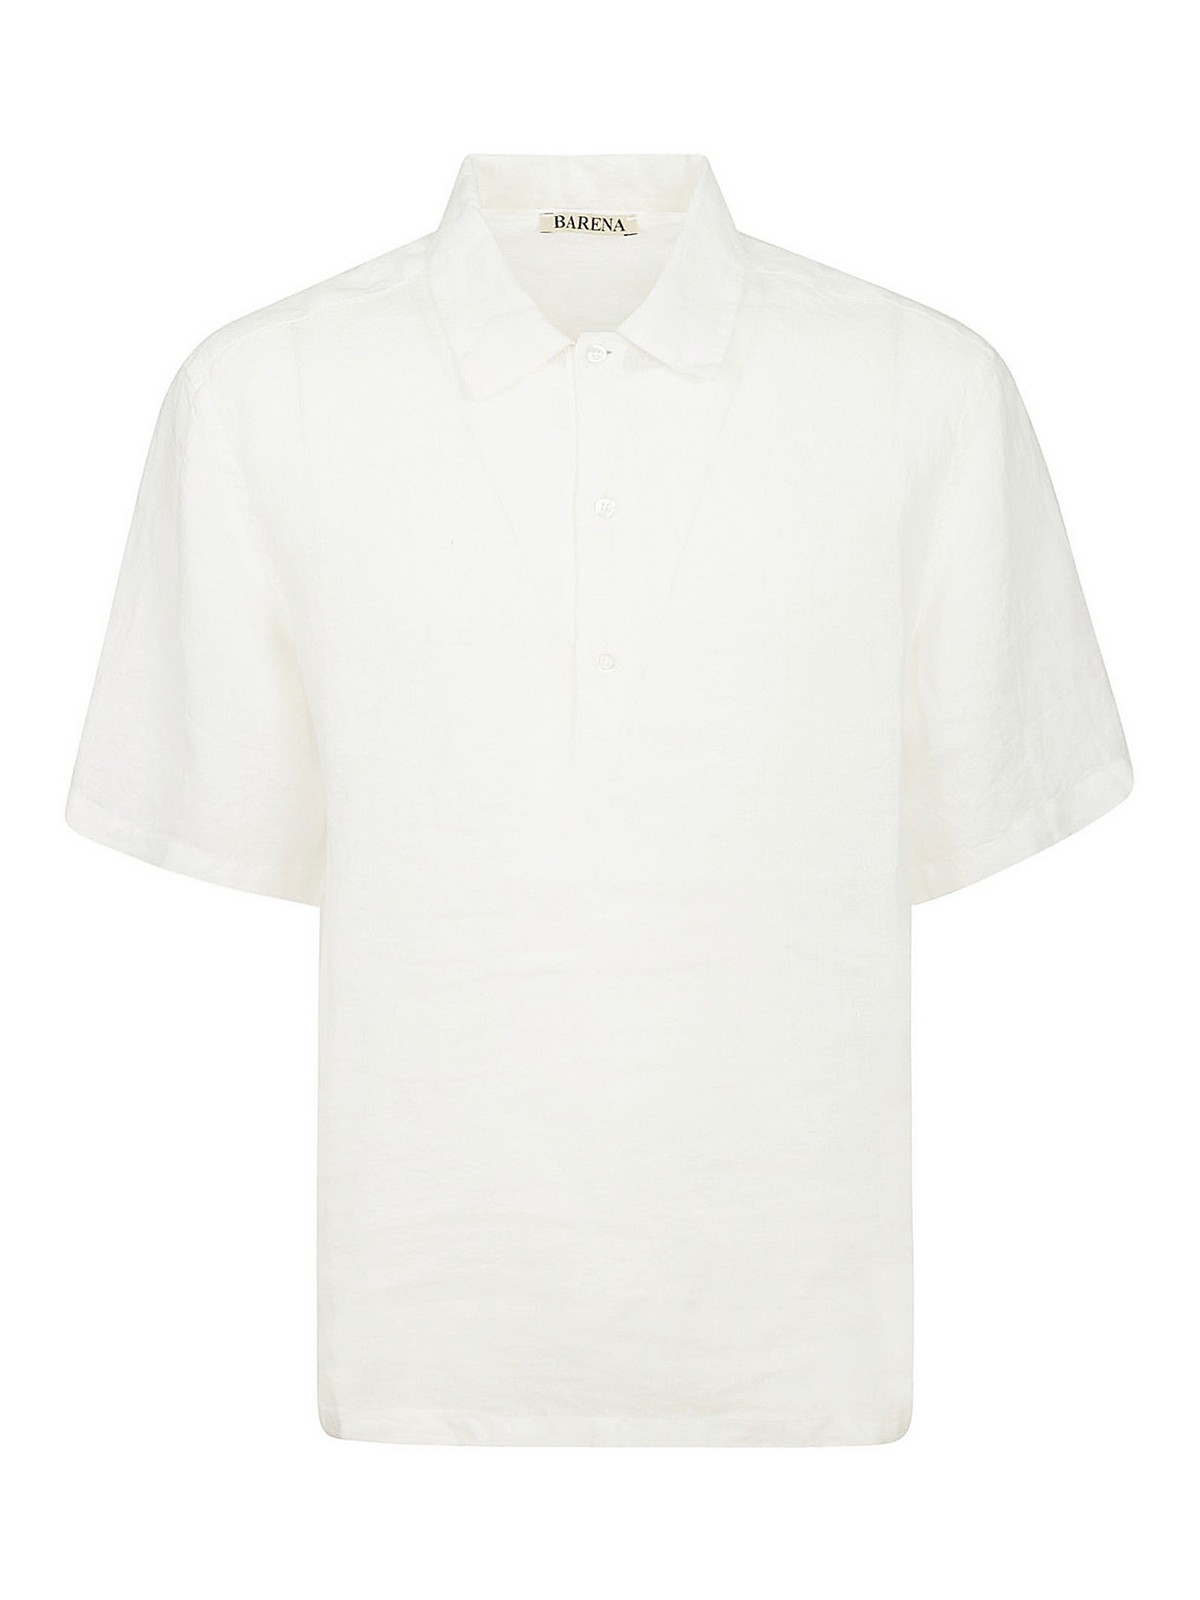 Barena Venezia Shirt Orza In White